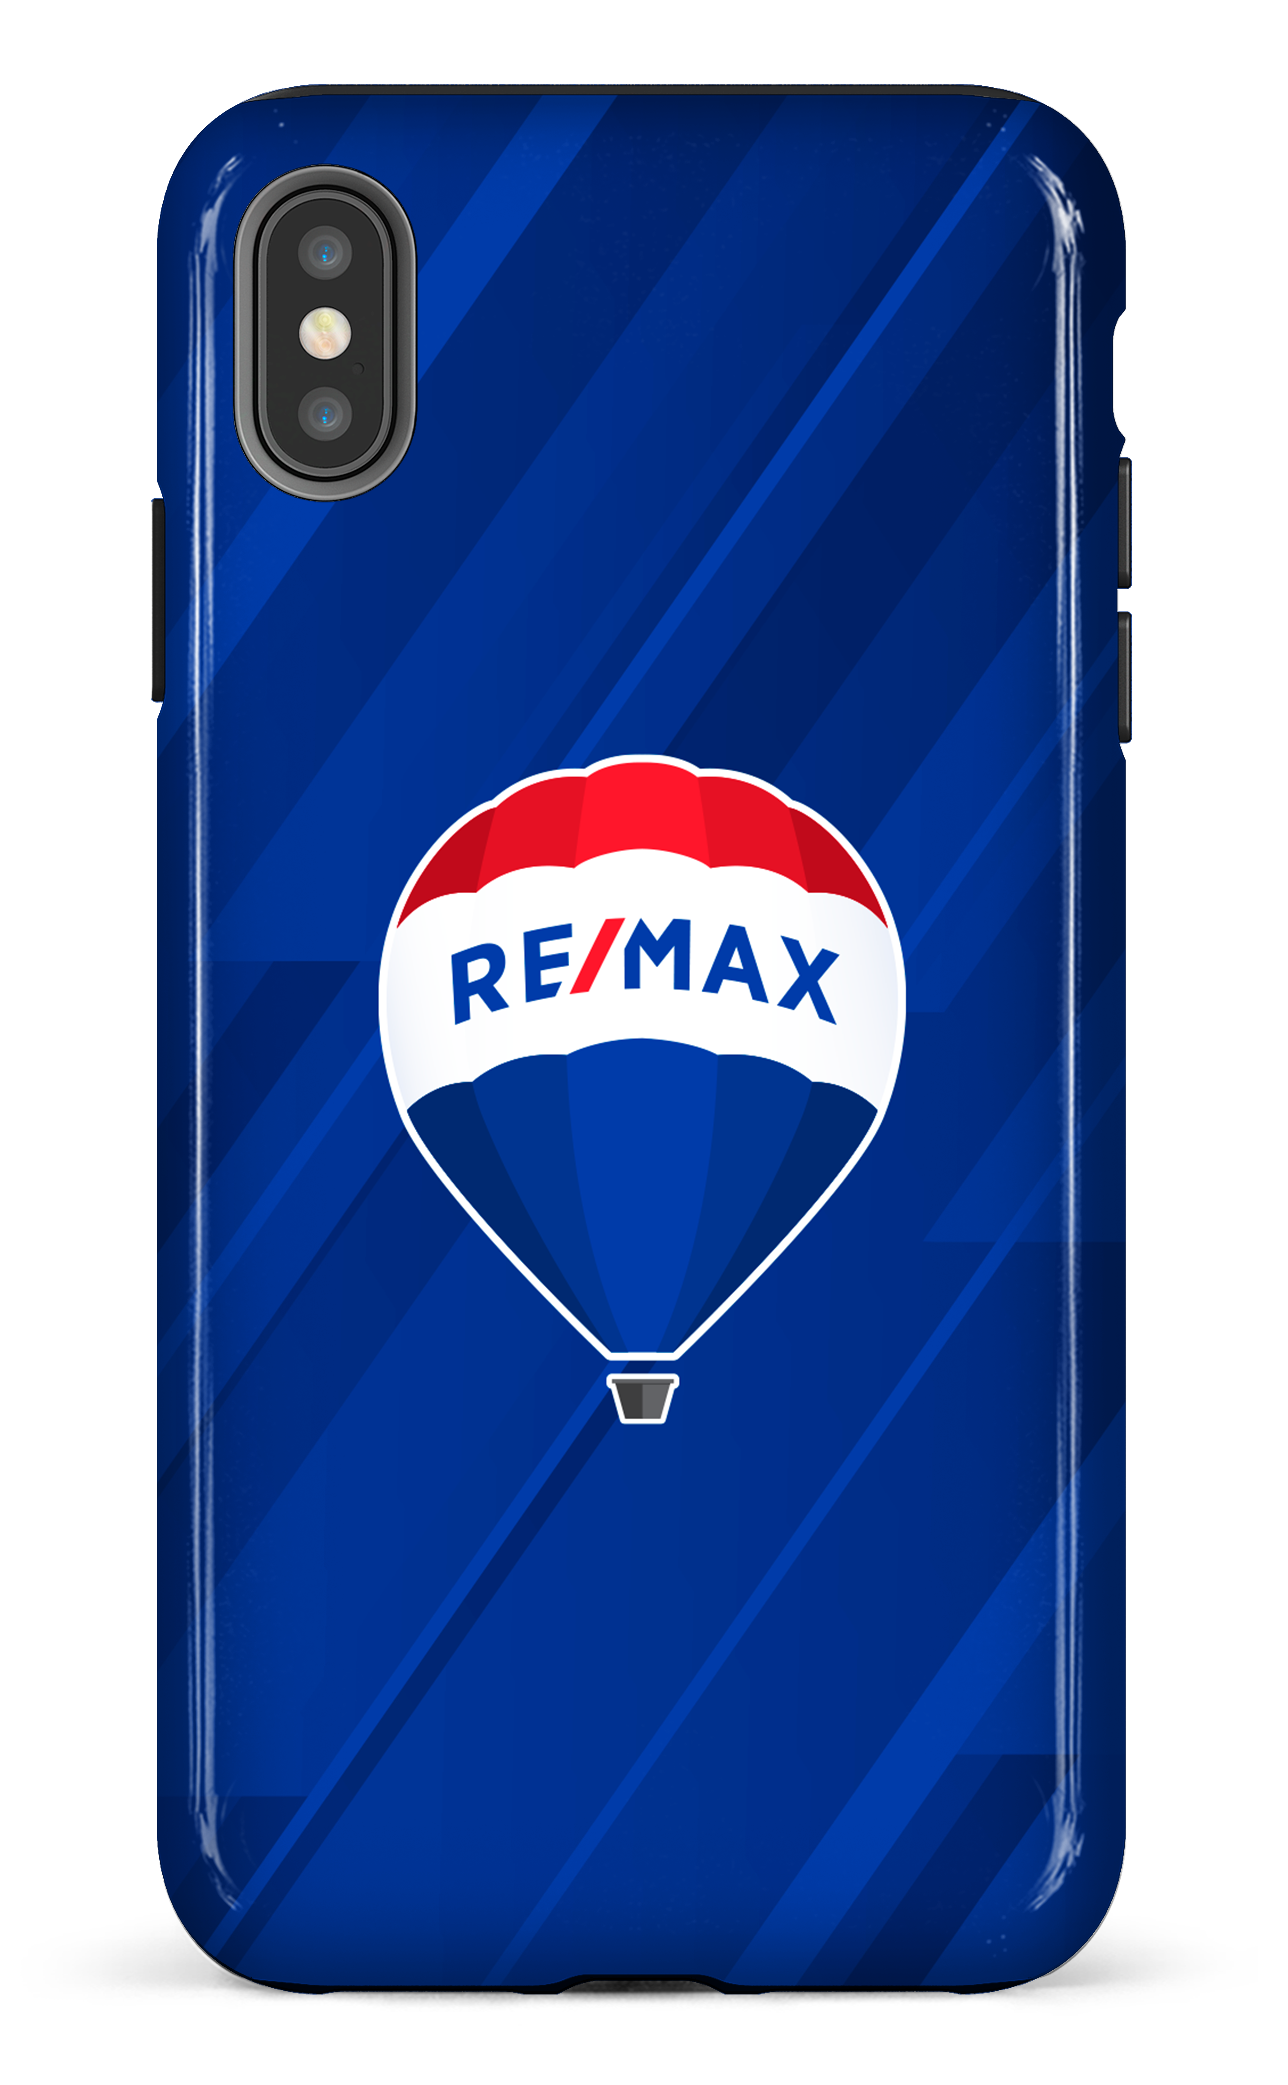 Remax Bleu - iPhone XS Max